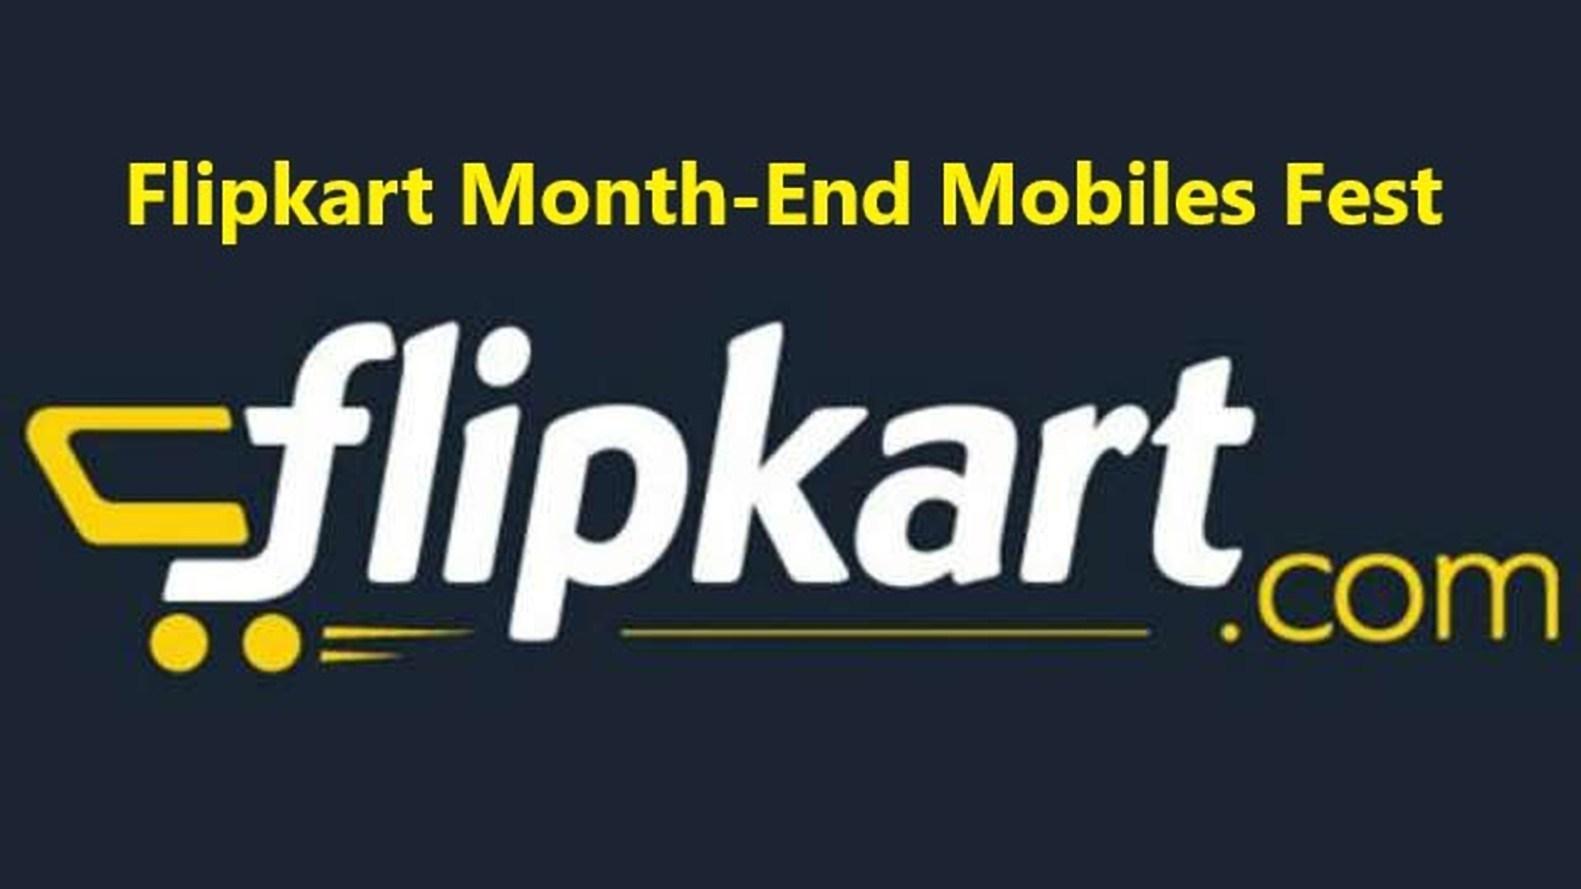 Flipkart मोबाईल Bonanza सेल में स्मार्टफोन्स पर मिलेगा भारी डिस्काउंट